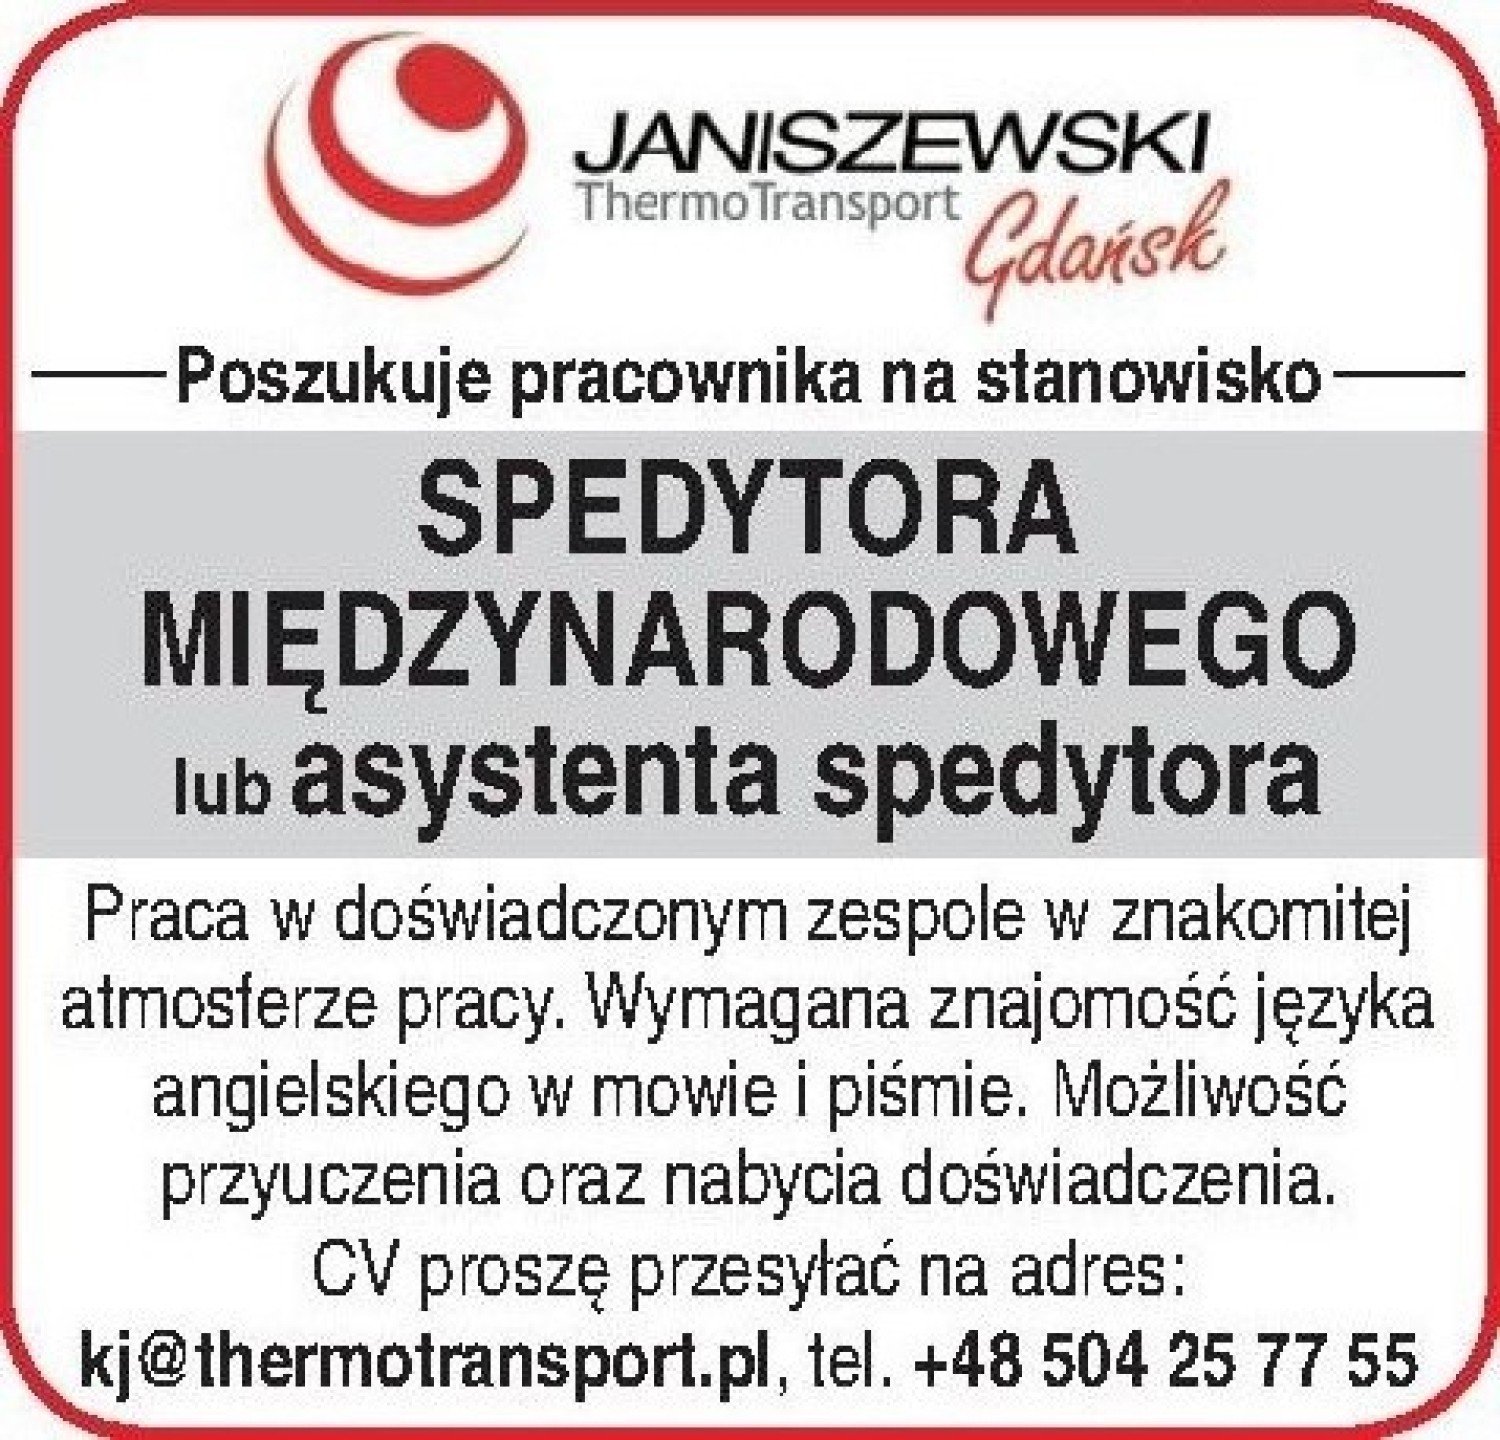 Firma Janiszewski ThermoTransport poszukuje pracownika na stanowisko  spedytora międzynarodowego | Gdańsk Nasze Miasto